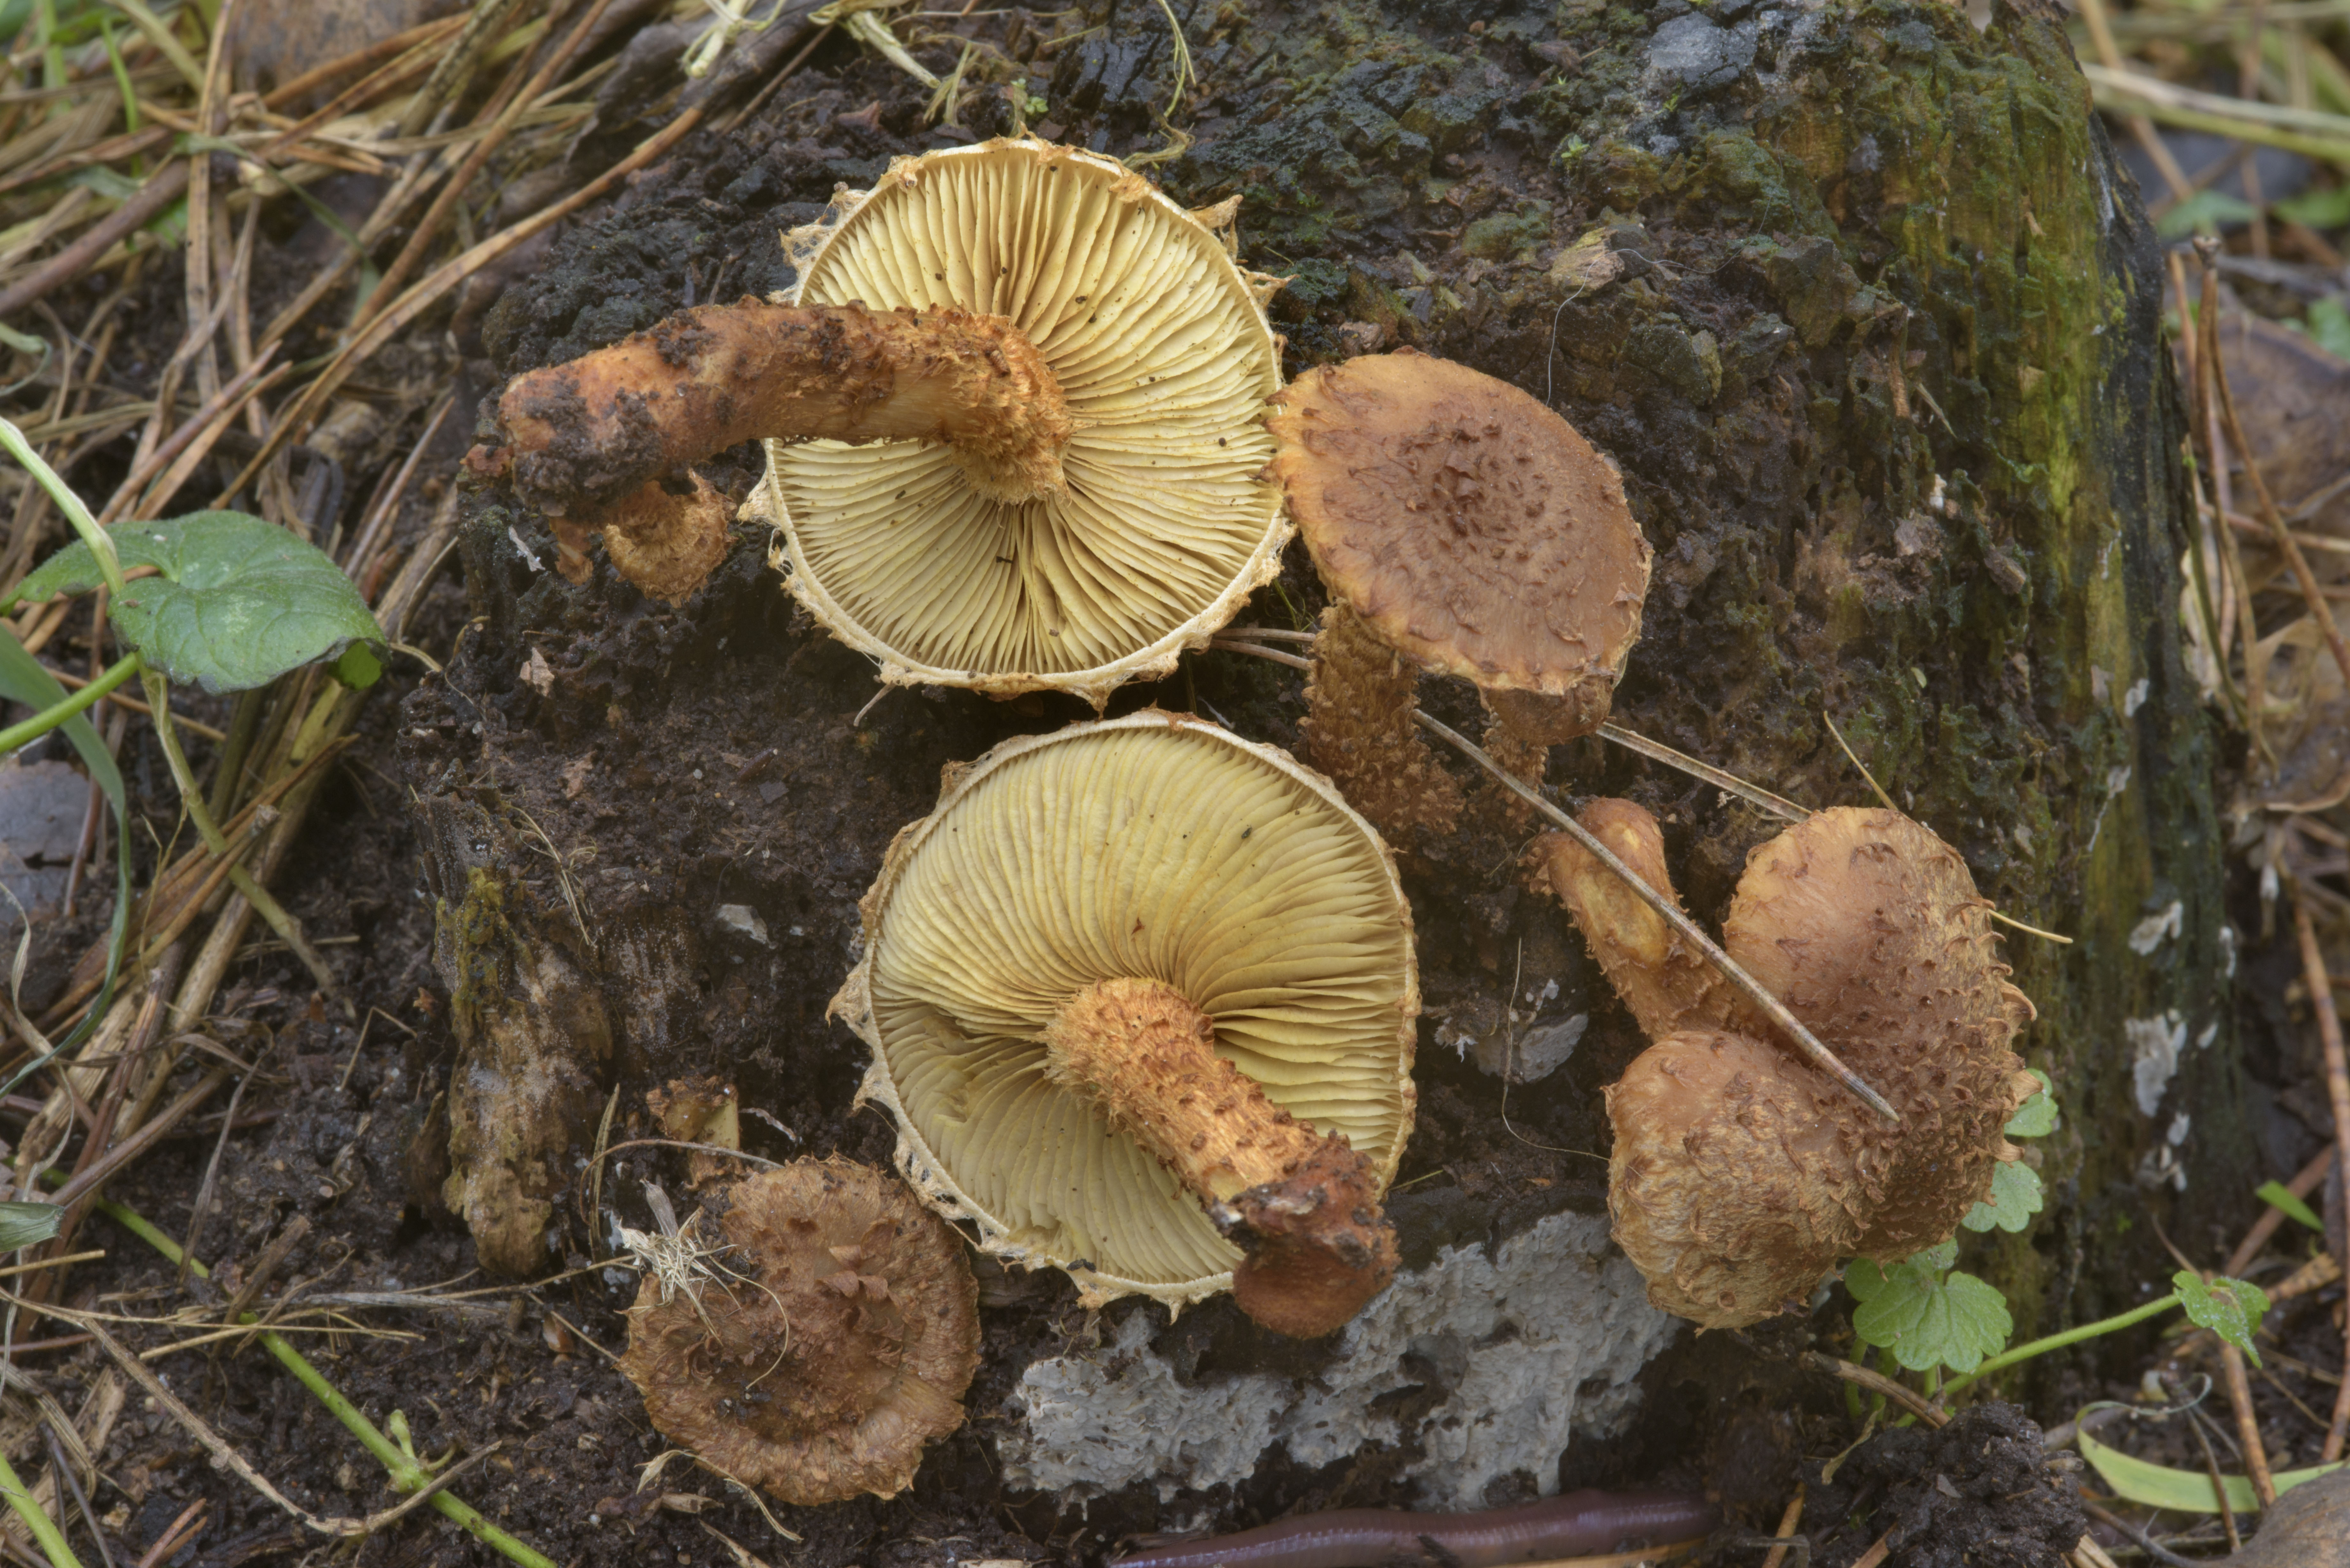 Photo 1970-31: Partially frozen shaggy scalycap mushrooms...Sosnovka ...